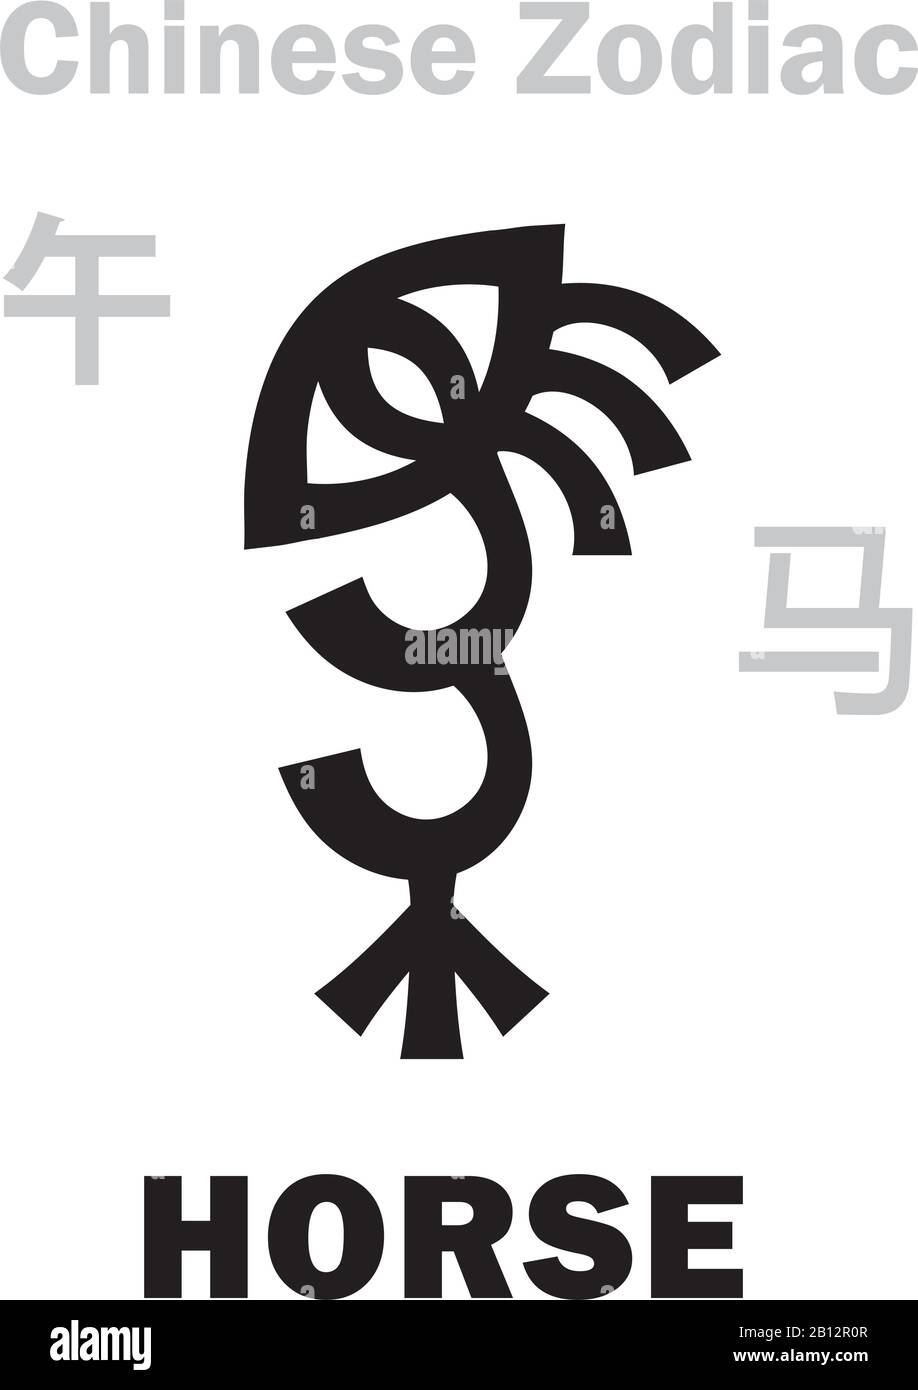 Astrologie-Alphabet: Pferd [马] Zeichen des chinesischen Tierkreises. Chinesisches Zeichen, hieroglyphisches Zeichen (Symbol). Stock Vektor